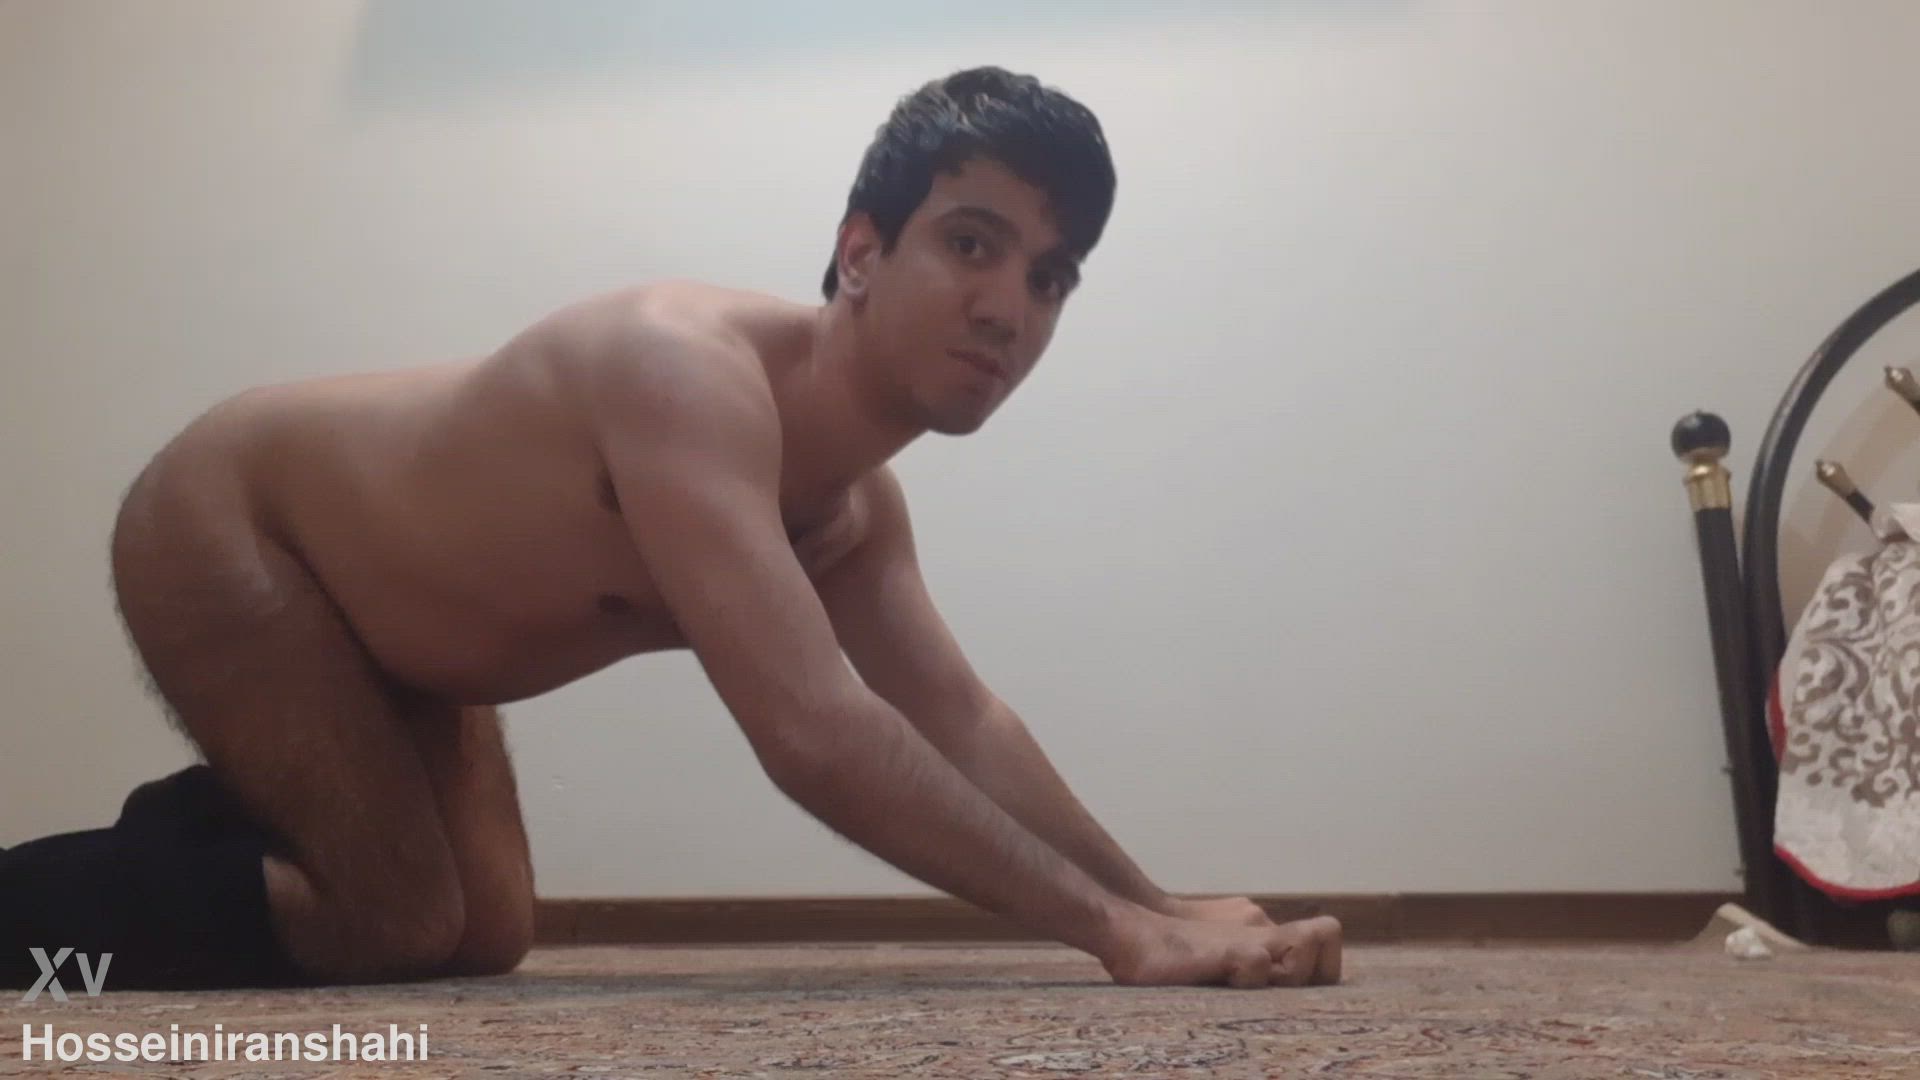 Ass porn video with onlyfans model hosseiniranshahi <strong>@hosseiniran</strong>